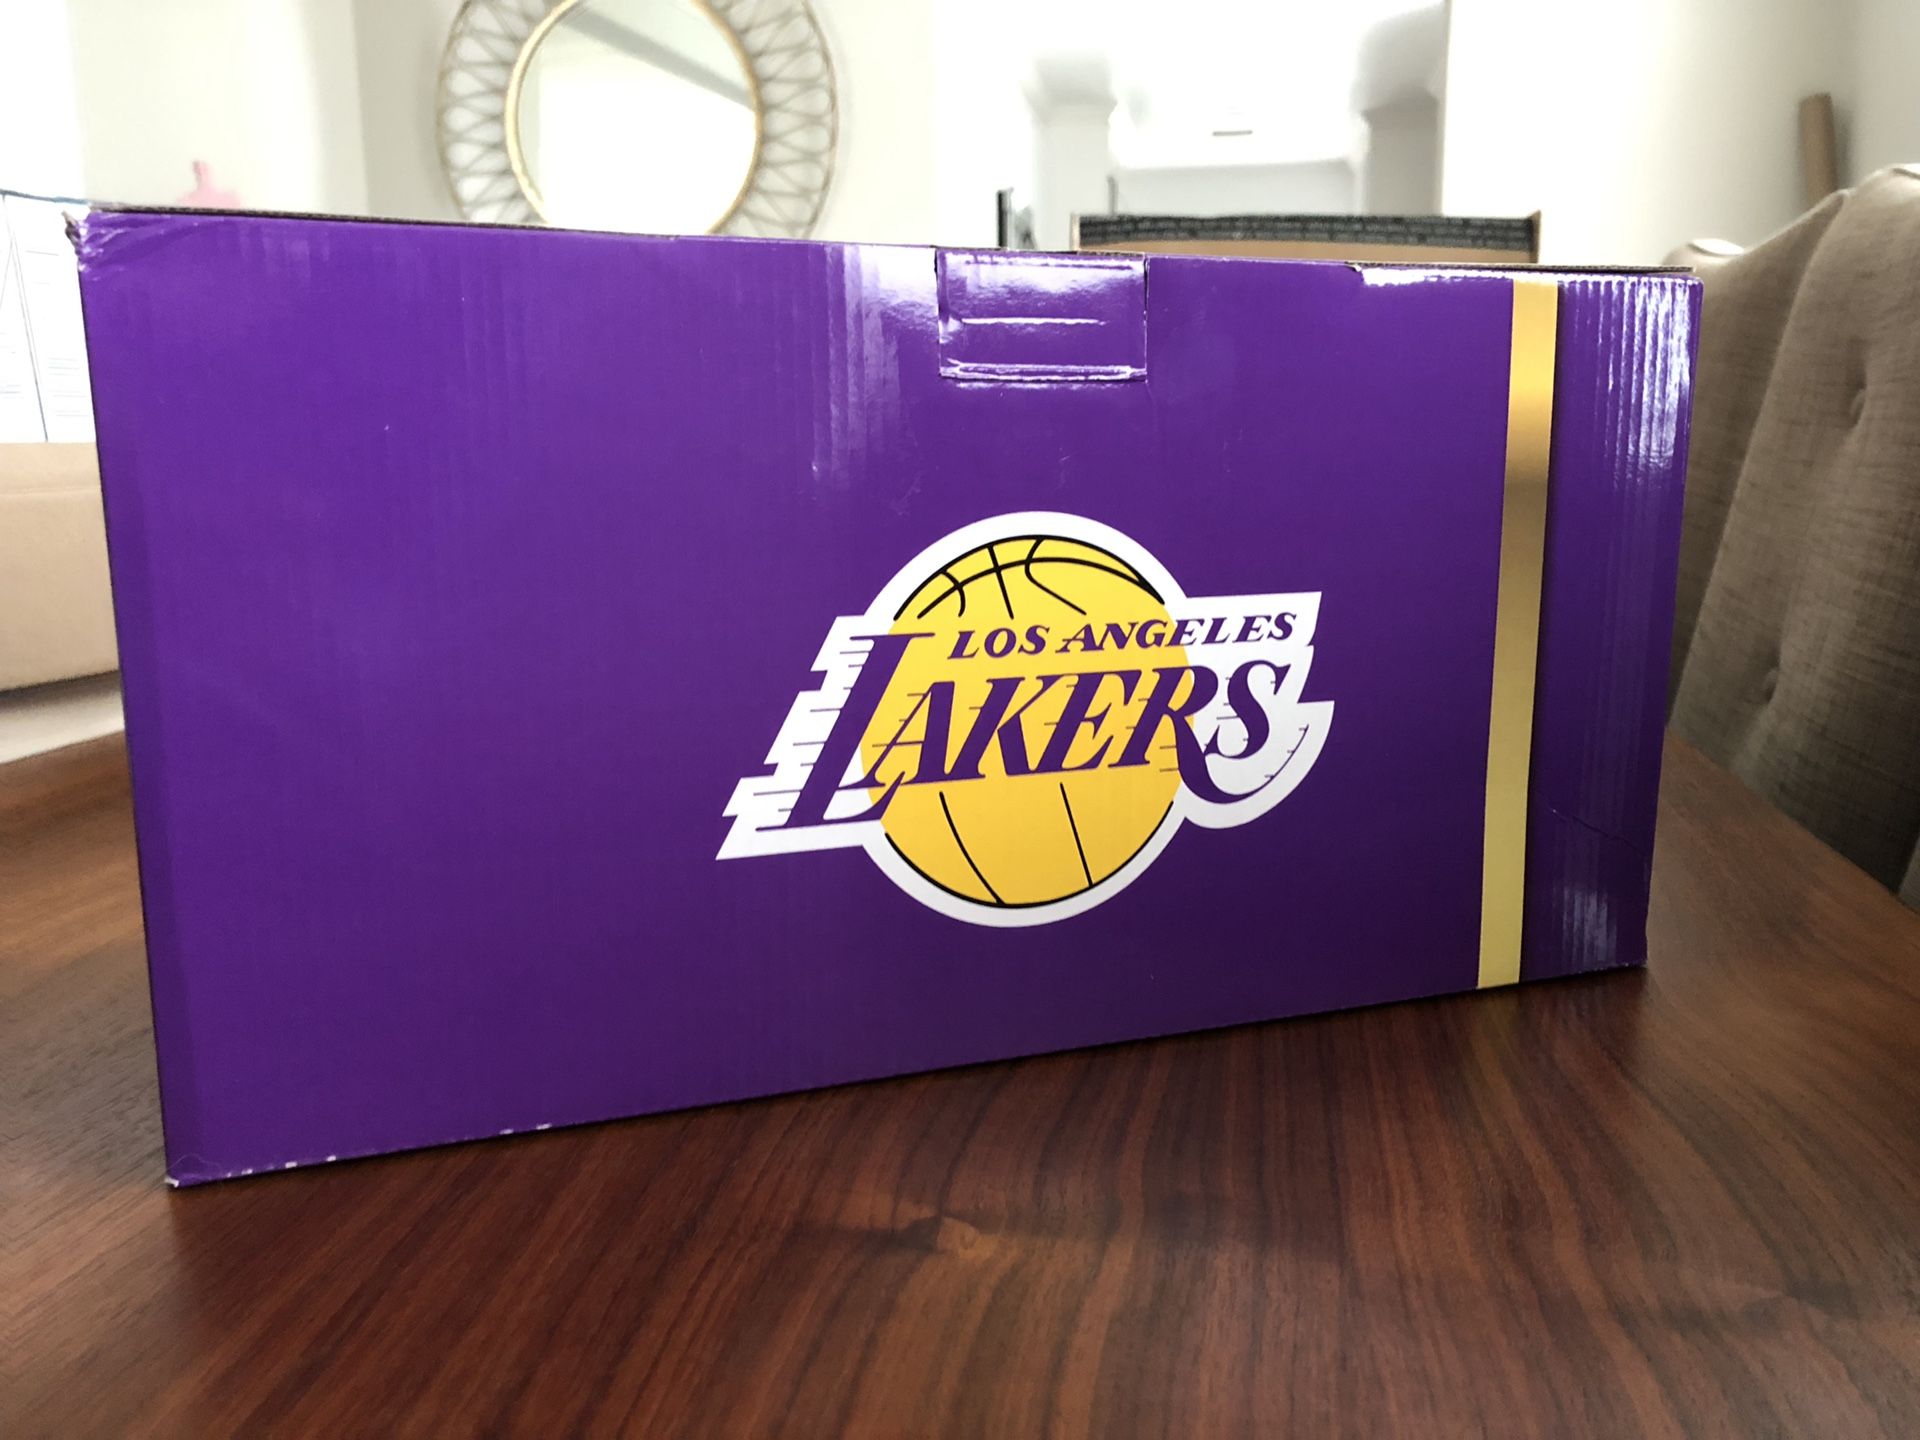 Brand New Lakers Blender Set 17 pcs!